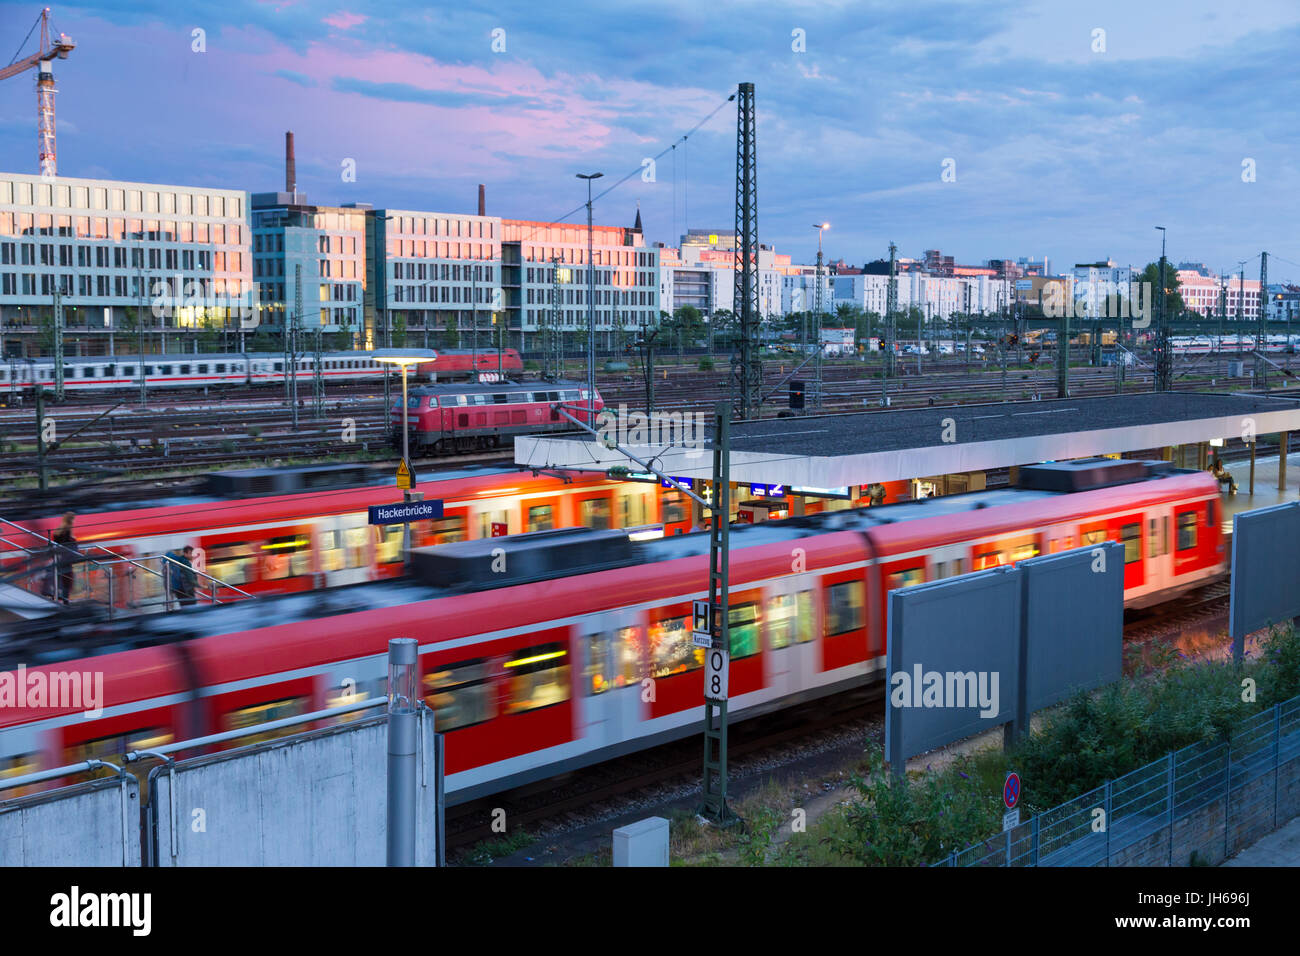 Escoba Acrobacia conversacion Ferrocarril con trenes en Haccurbrucke y tren S-bahn en Munich, Alemania  Fotografía de stock - Alamy